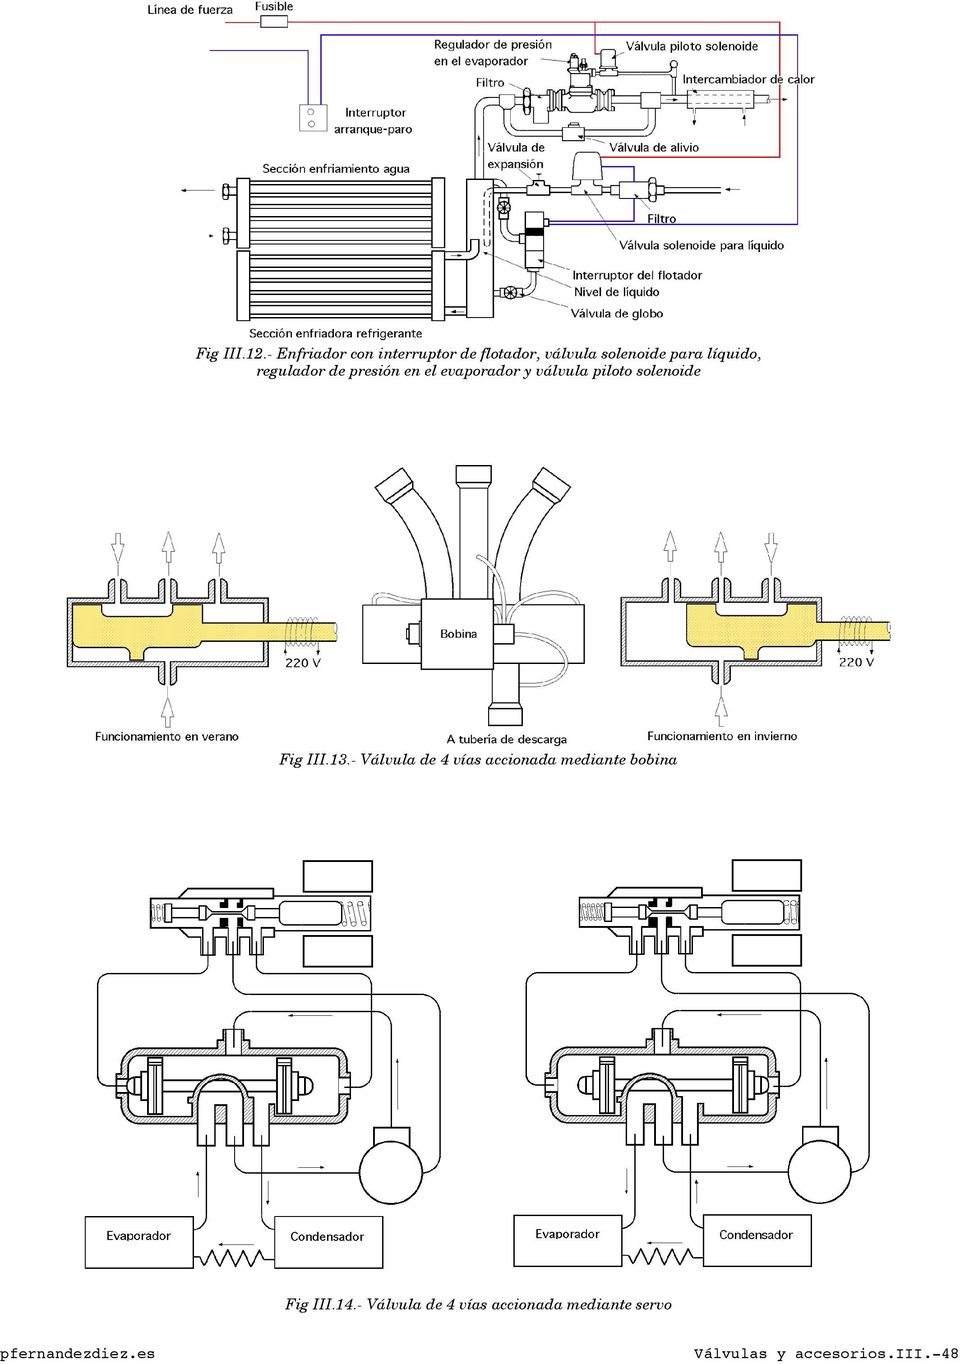 regulador de presión en el evaporador y válvula piloto solenoide Fig III.